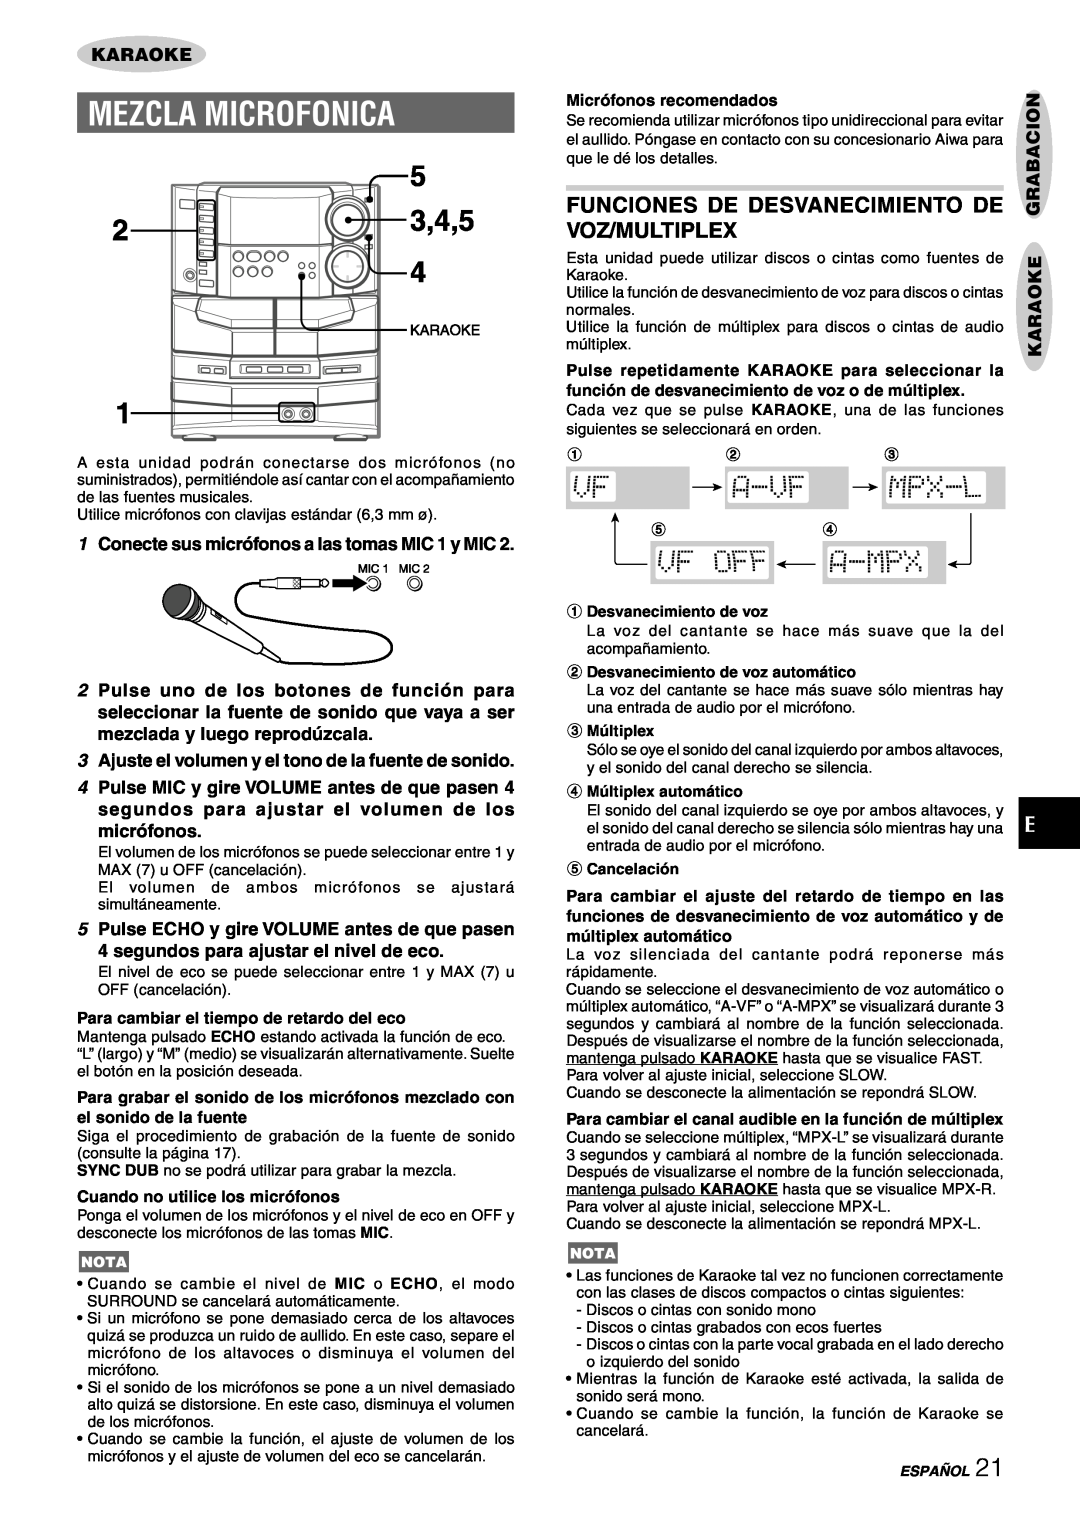 Sony NSX-AJ80 manual Mezcla Microfonica, Funciones De Desvanecimiento De Voz/Multiplex, micrófonos, Karaoke Grabacion 